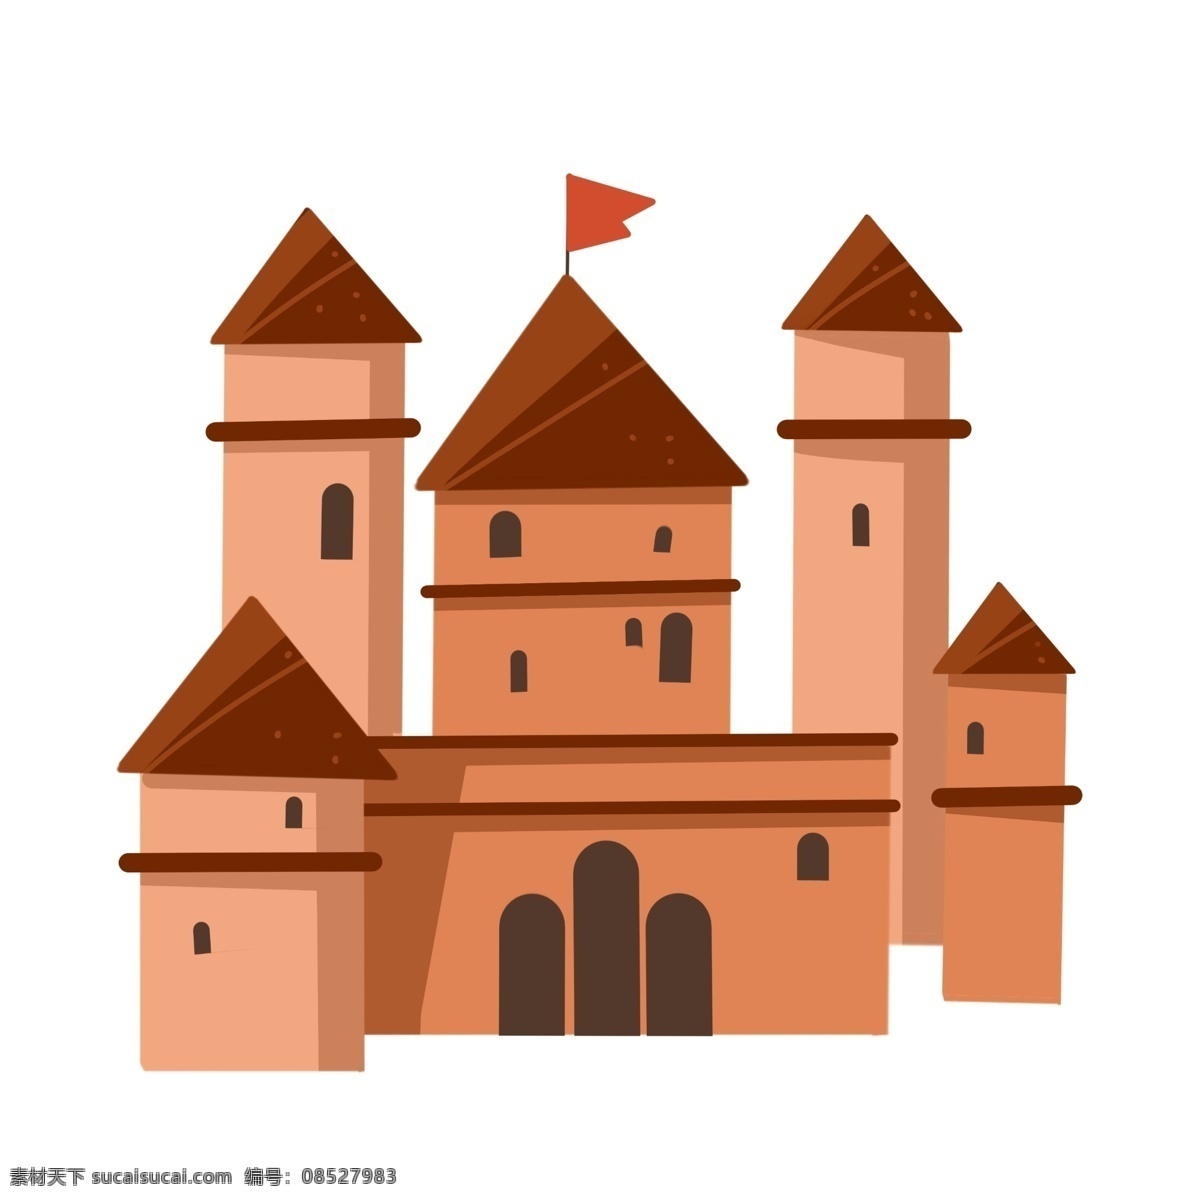 橙色 城堡 装饰 插画 橙色的栅栏 粉色的房檐 漂亮的城堡 古风城堡 建筑城堡 城堡住房 城堡插画